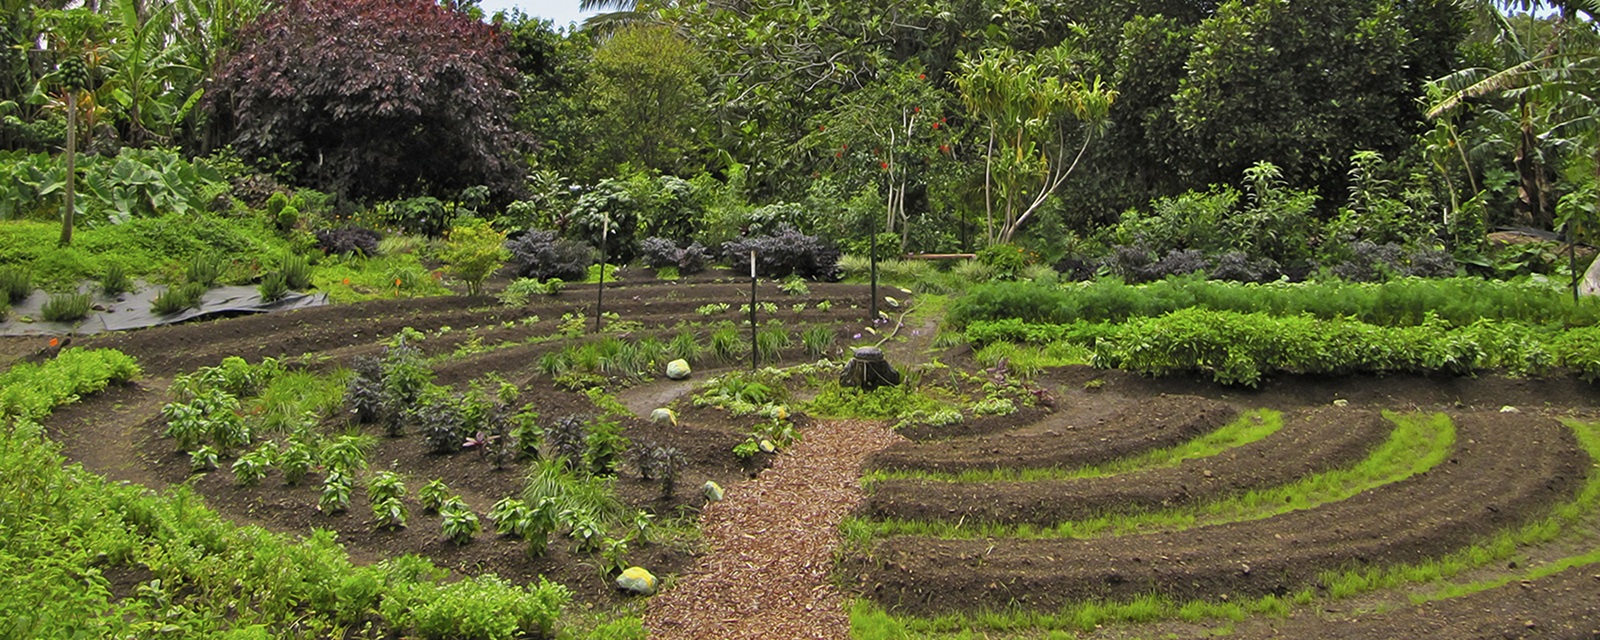 Permacultura: Principios y prácticas de diseño sostenible para sistemas agrícolas.